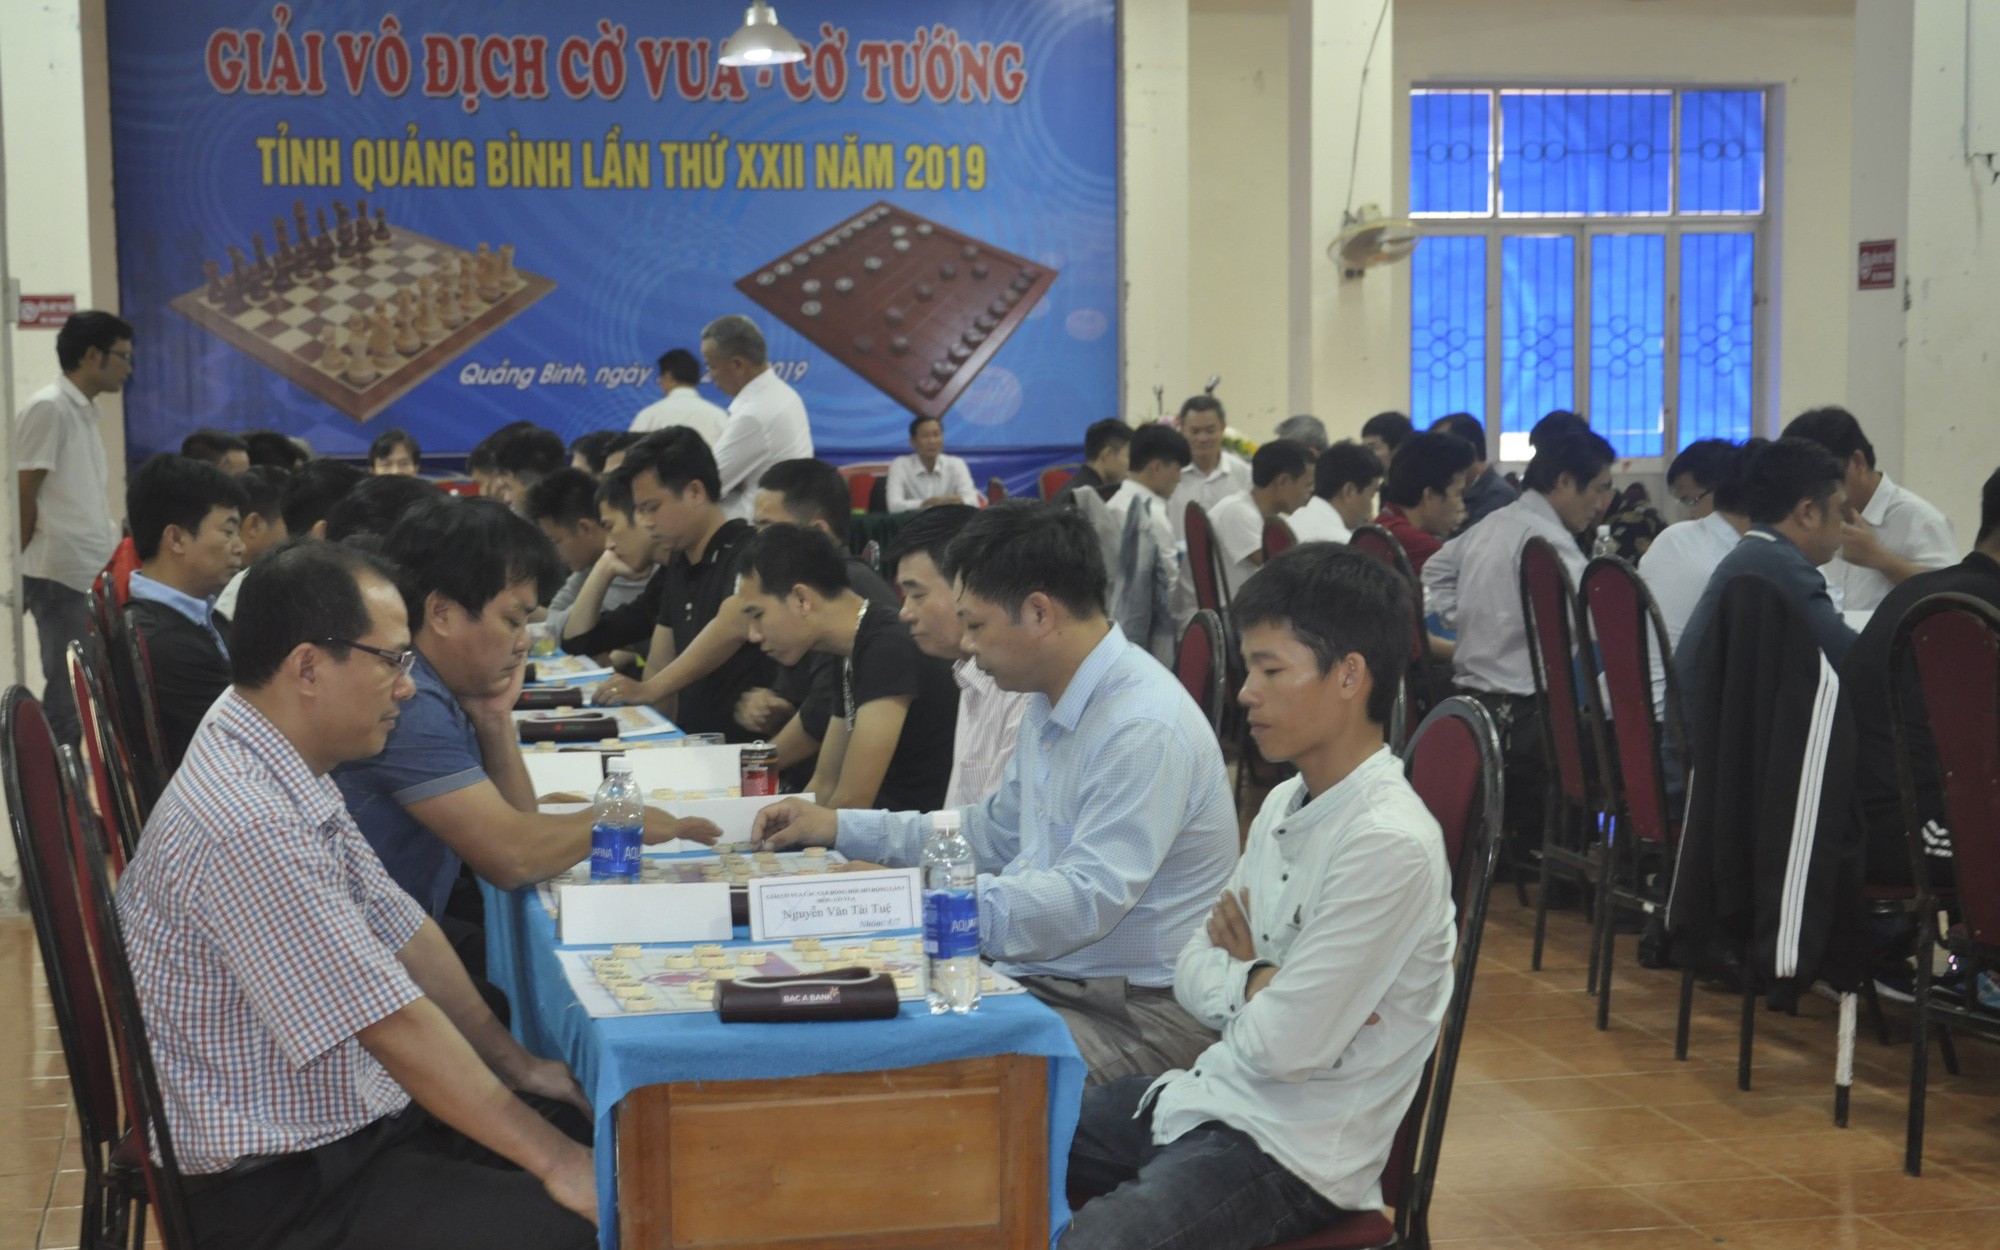 Quảng Bình: Hơn 100 kỳ thủ tham gia Giải vô địch cờ vua, cờ tướng năm 2019